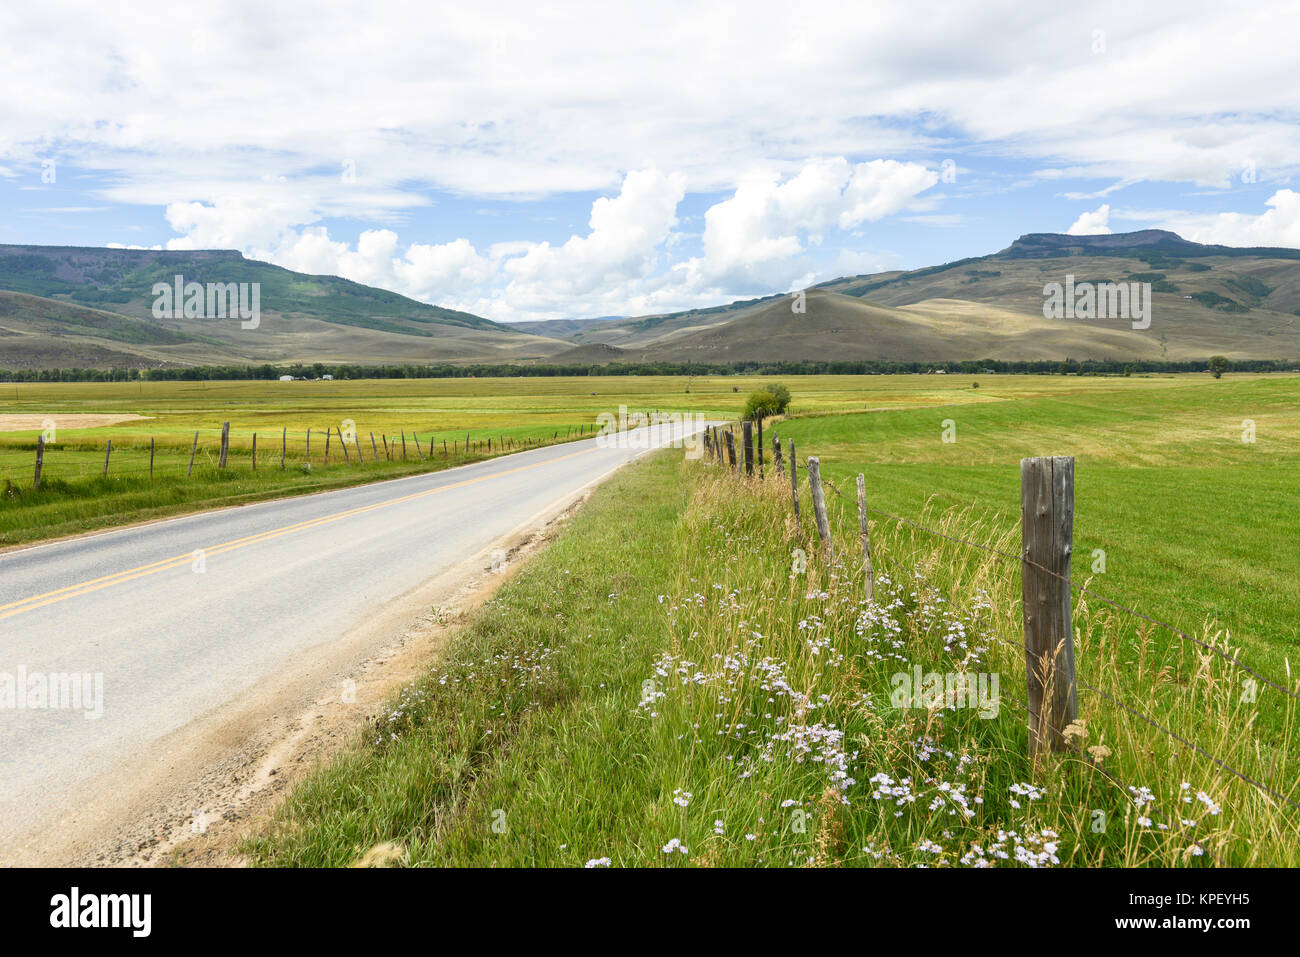 Paese di montagna su strada - una strada di campagna, in esecuzione attraverso un ranch di montagna, nei pressi di Crested Butte, Colorado, Stati Uniti d'America. Foto Stock